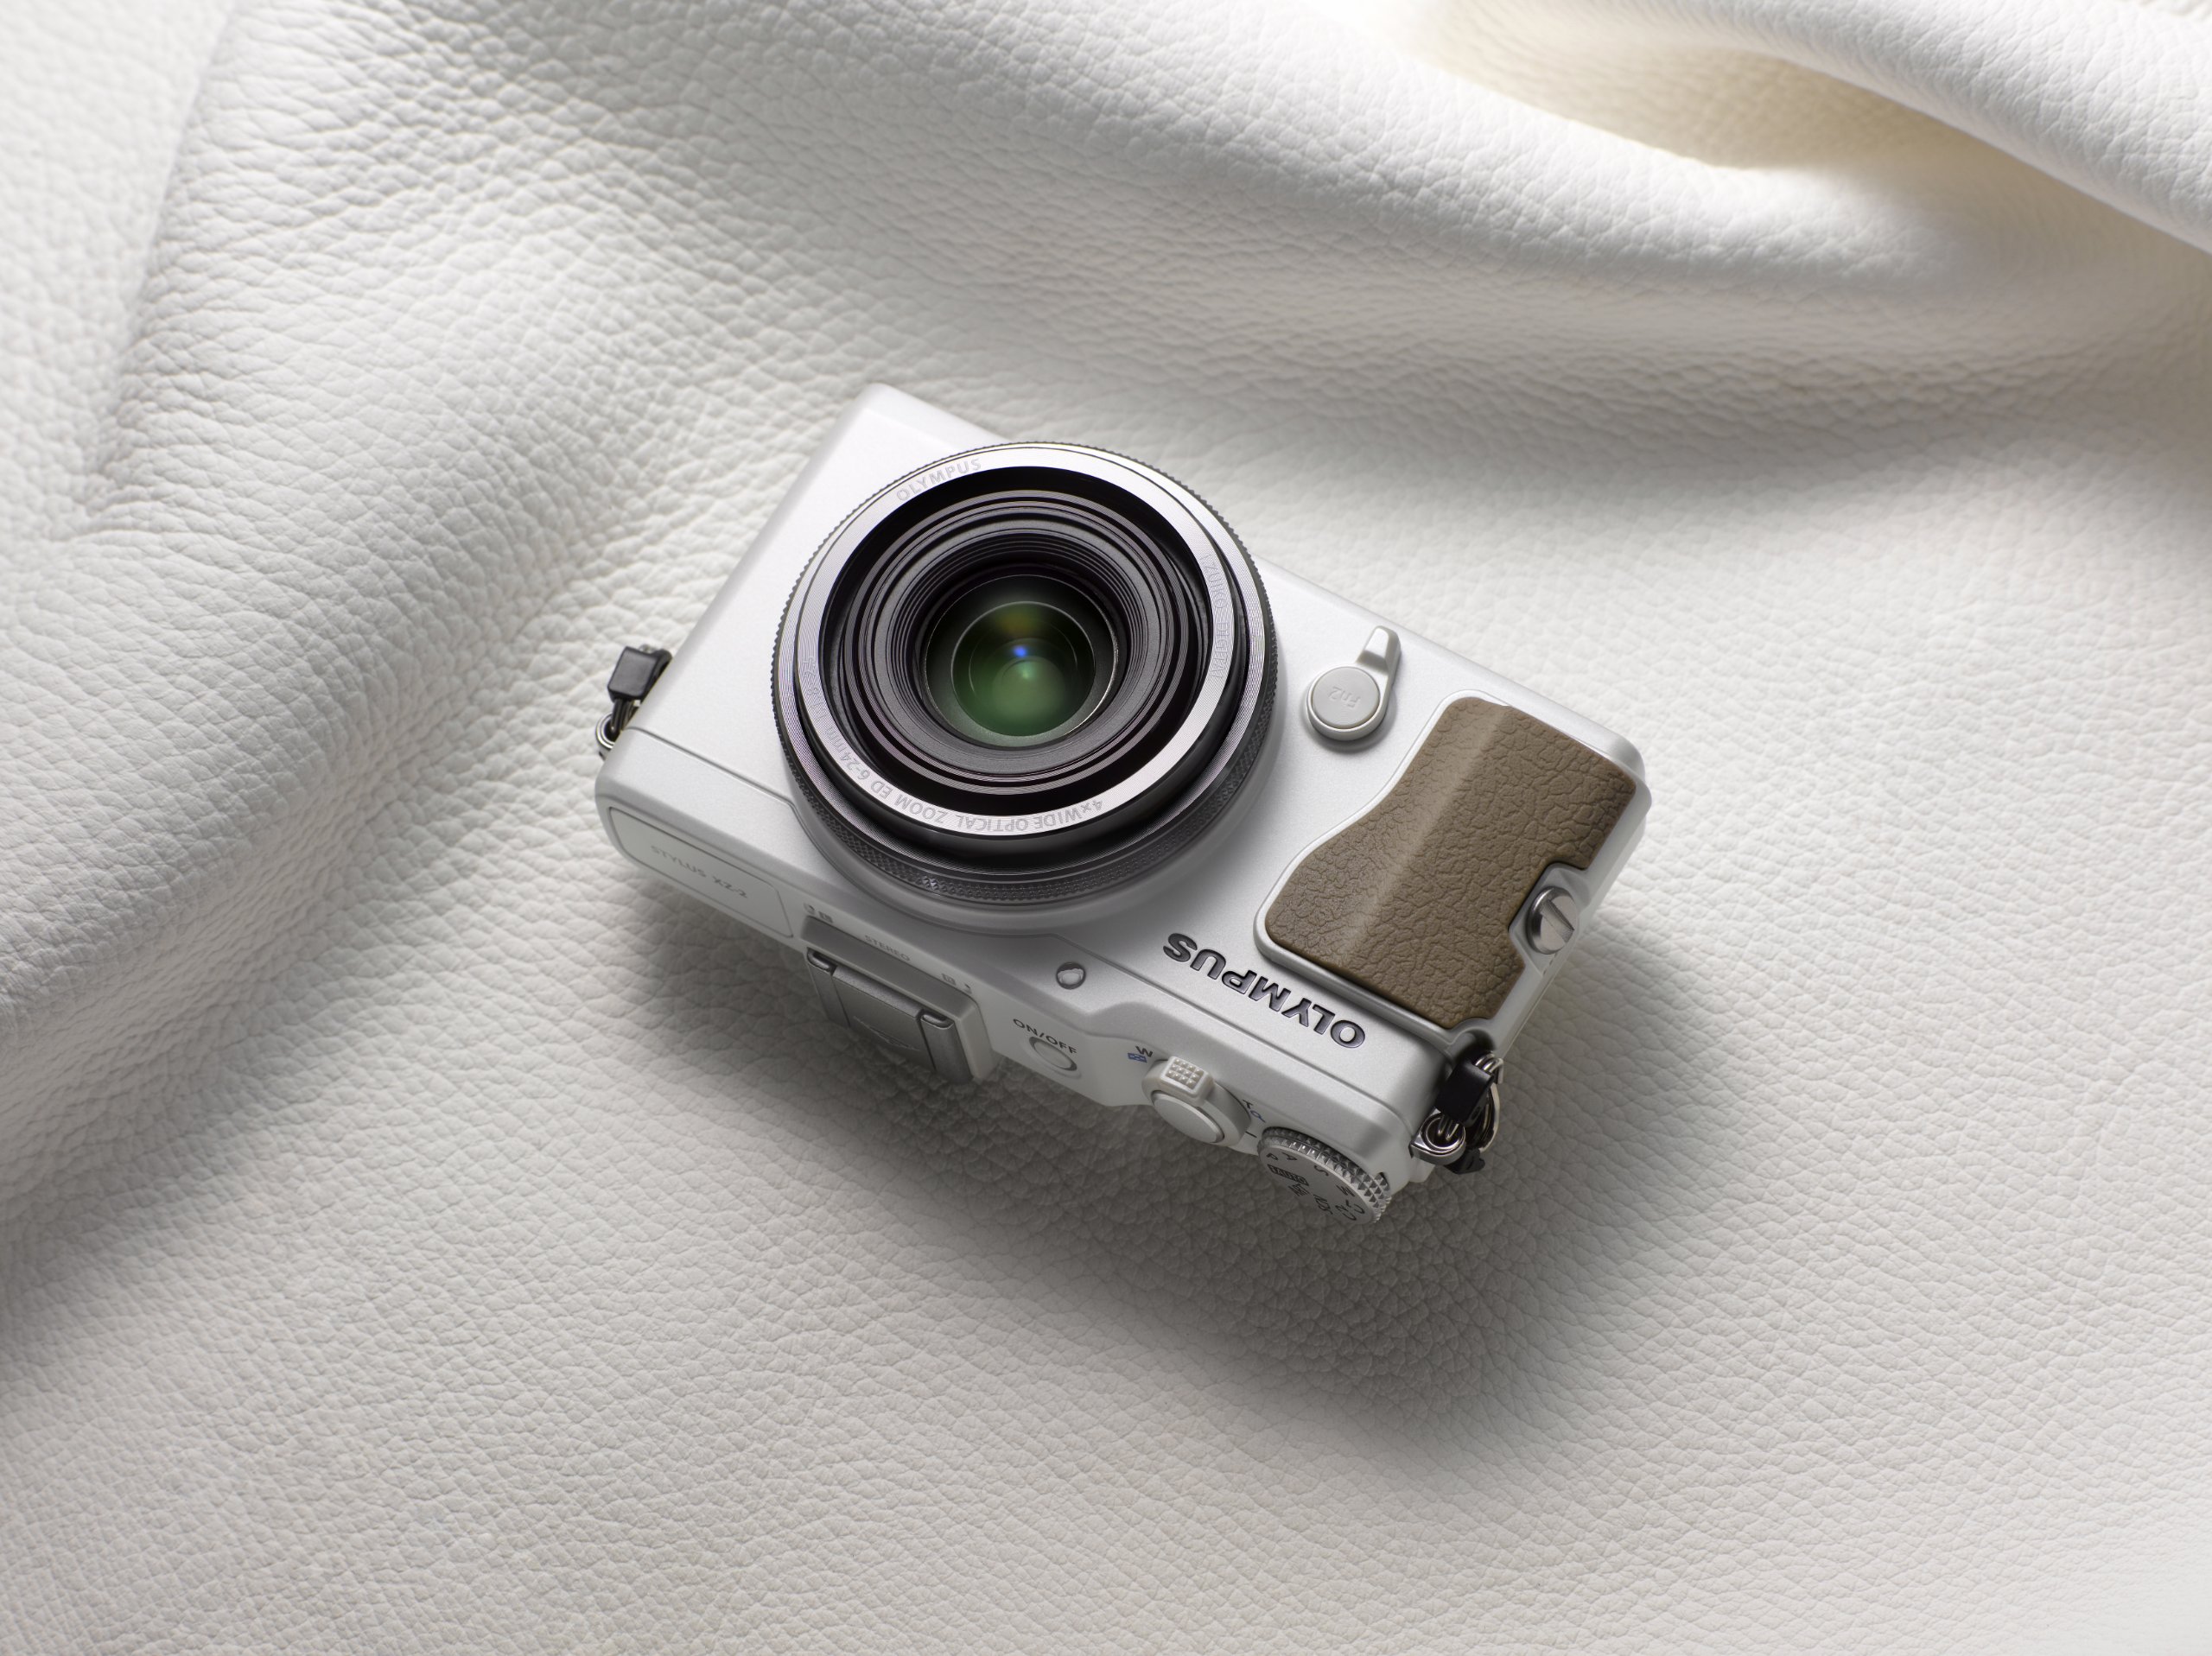 Olympus XZ-2 Digital Camera (White) - International Version (No Warranty)